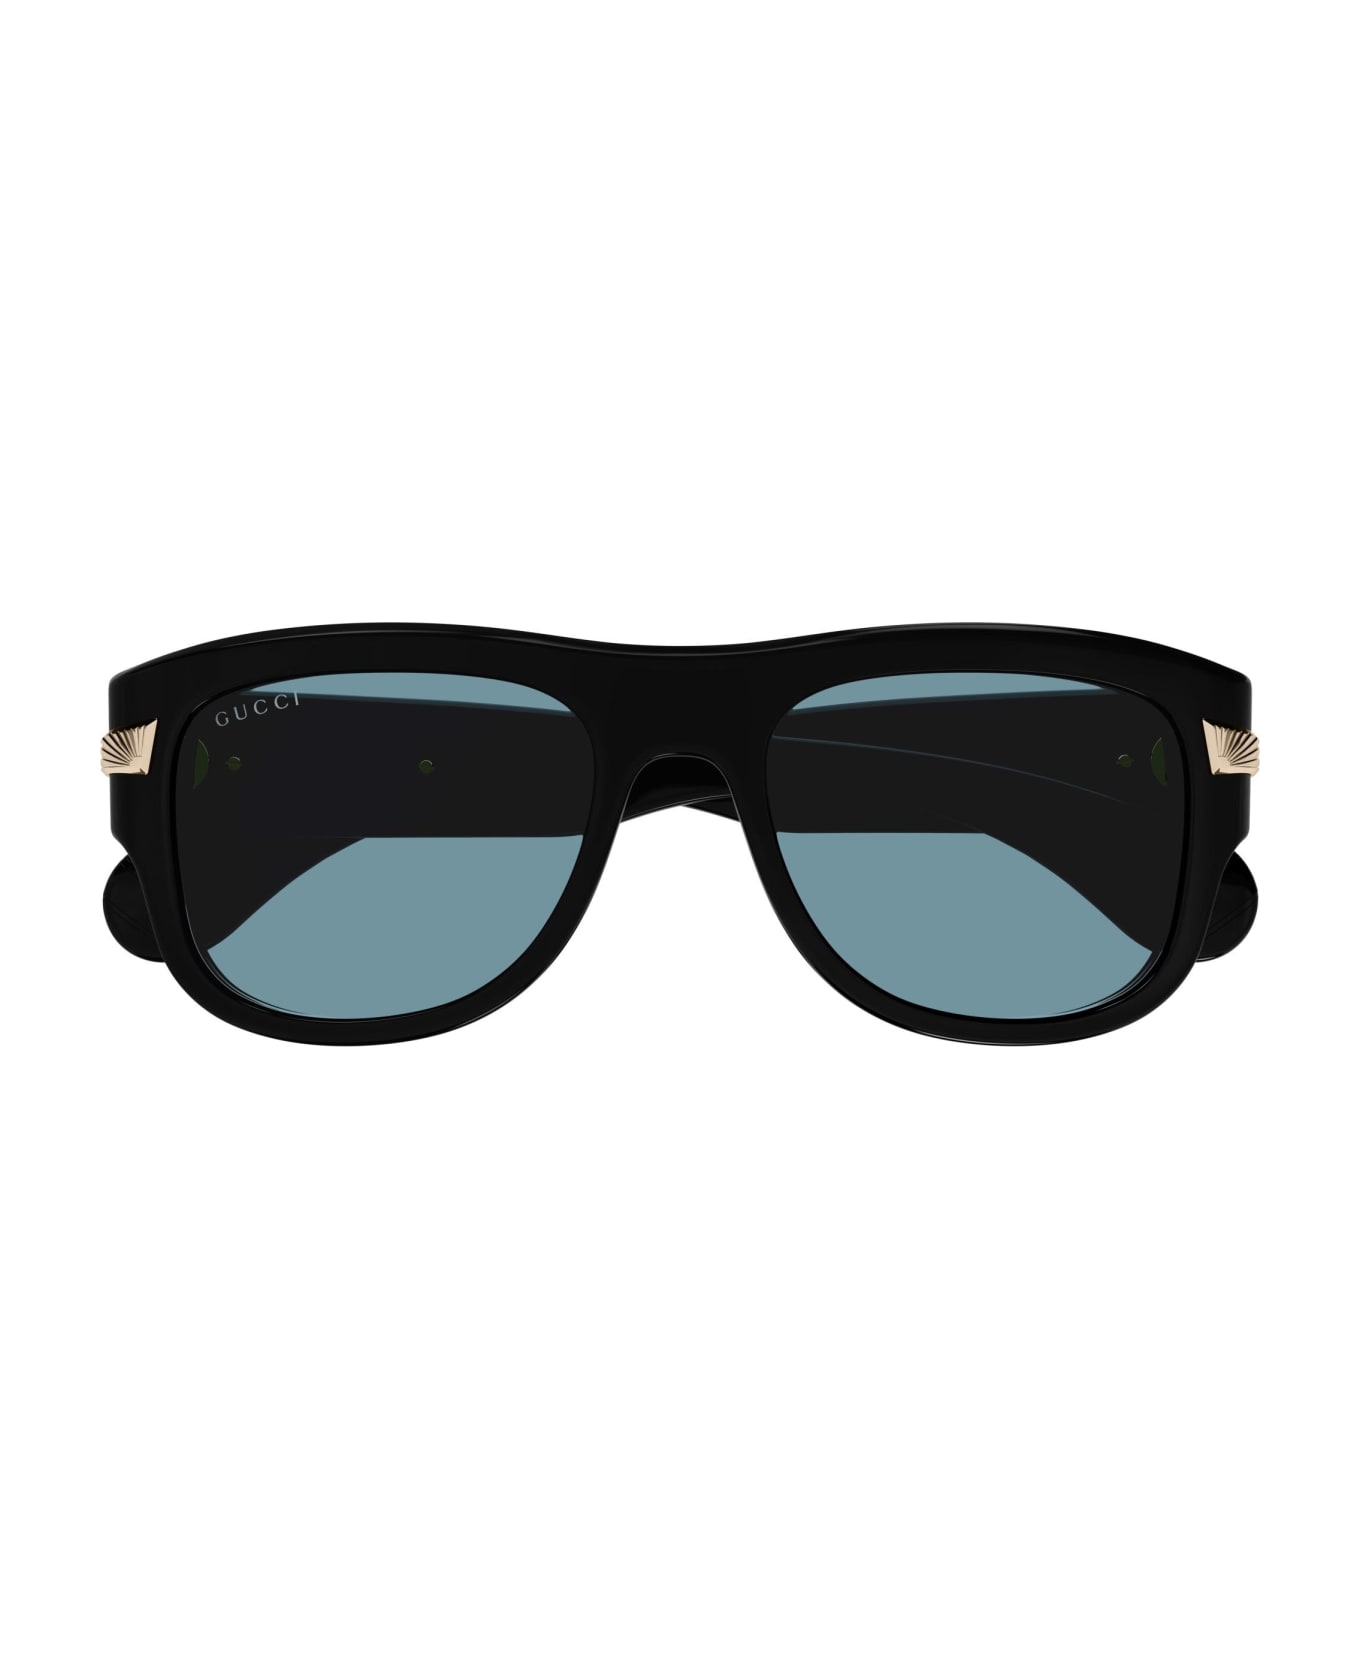 Gucci Eyewear Sunglasses - Nero/Blu